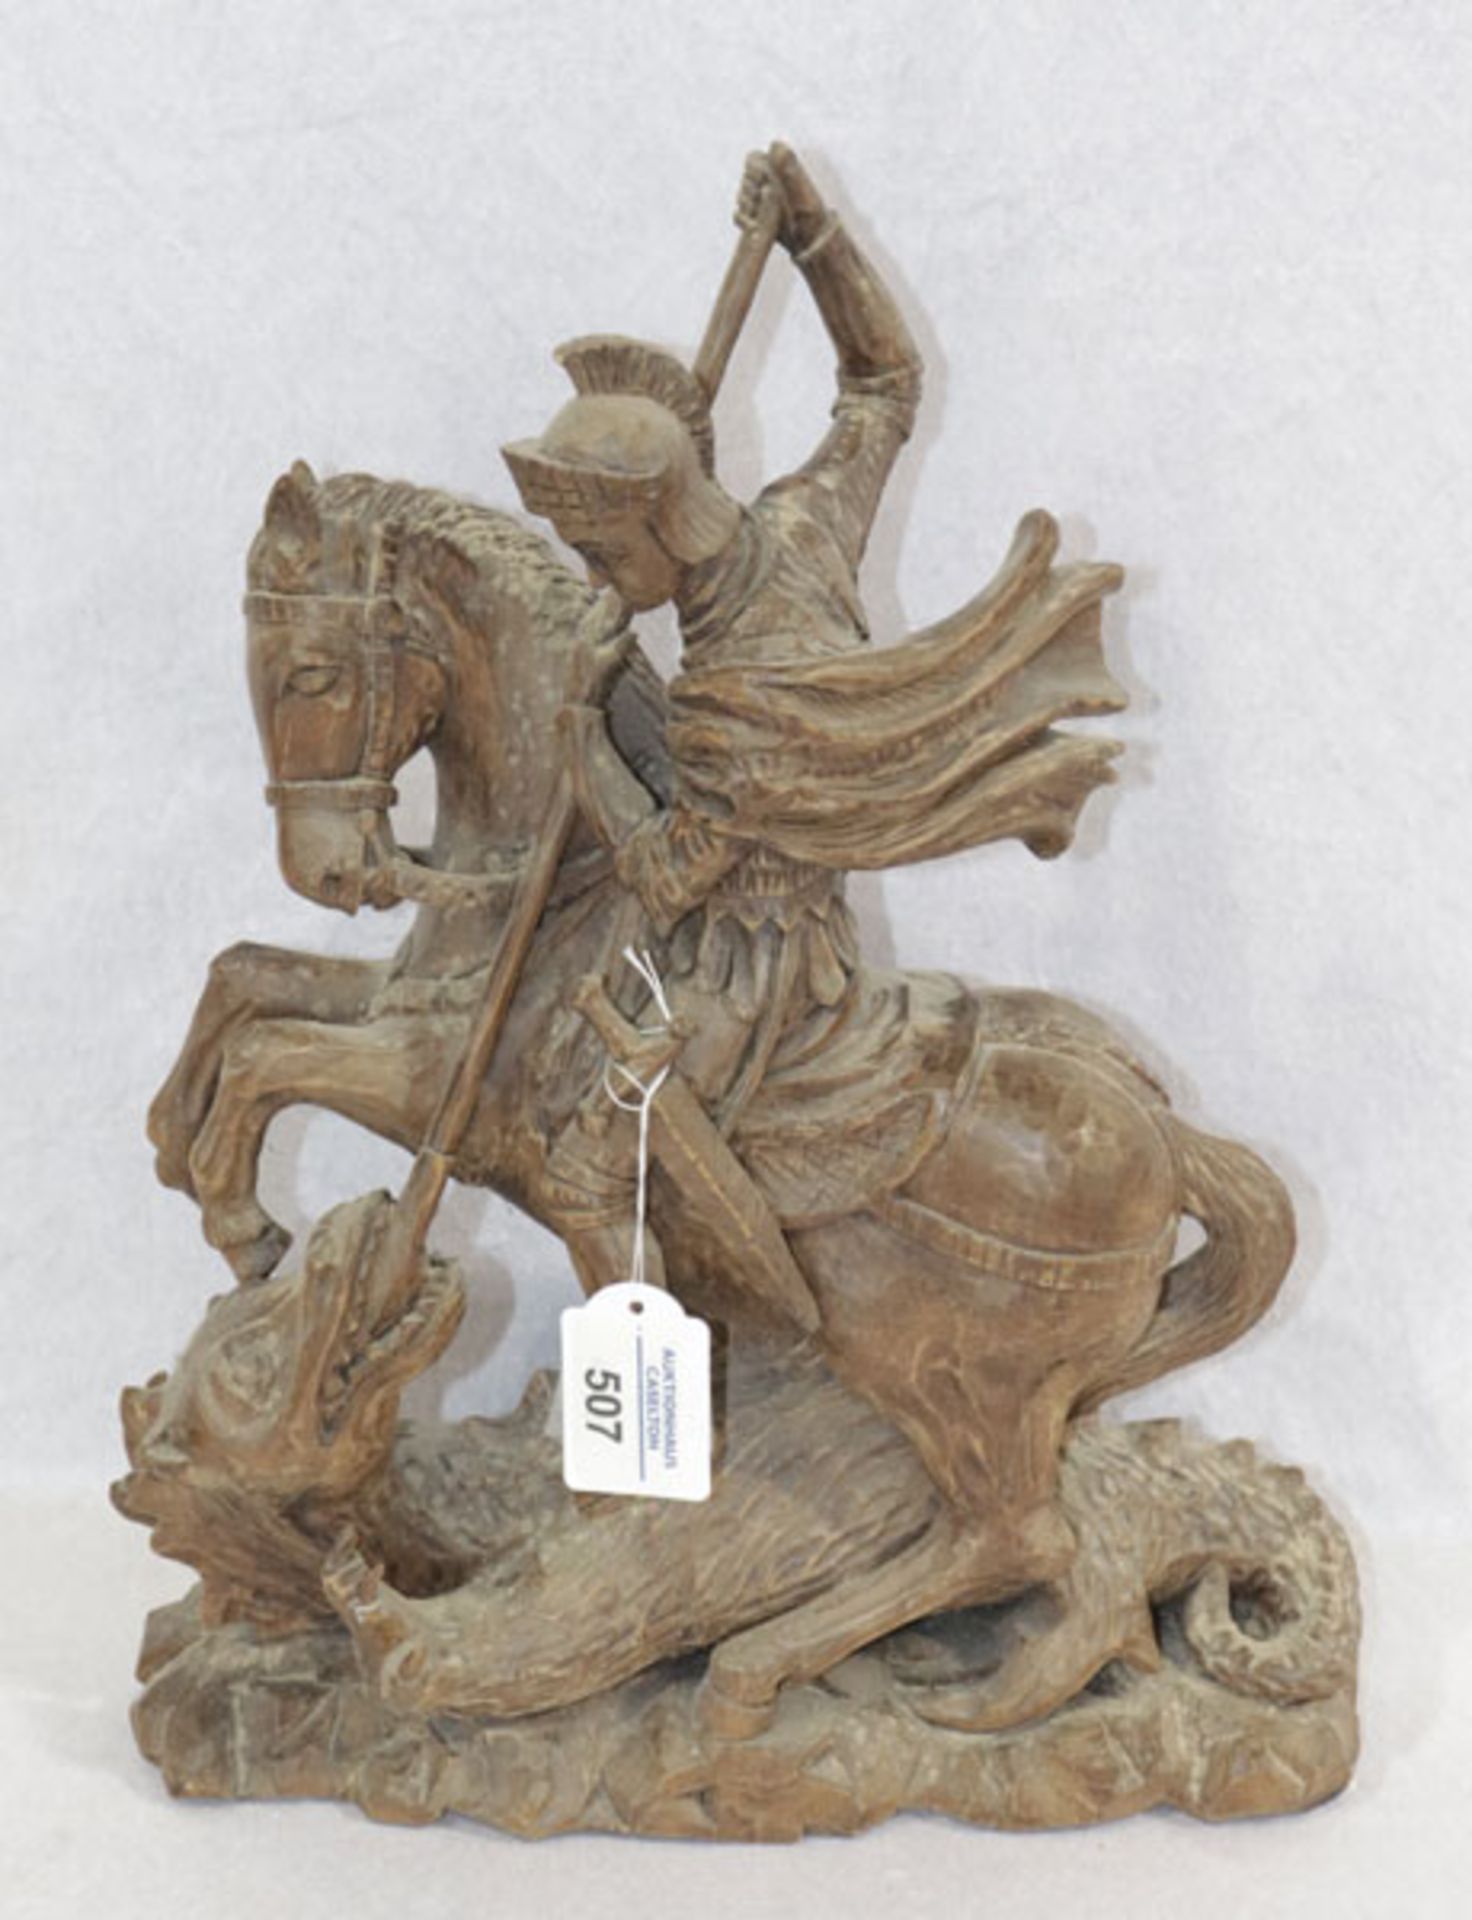 Holz Figurenskulptur 'Hl. Georg mit Drachen', dunkel gebeizt, H 37 cm, B 29 cm, T 14 cm,